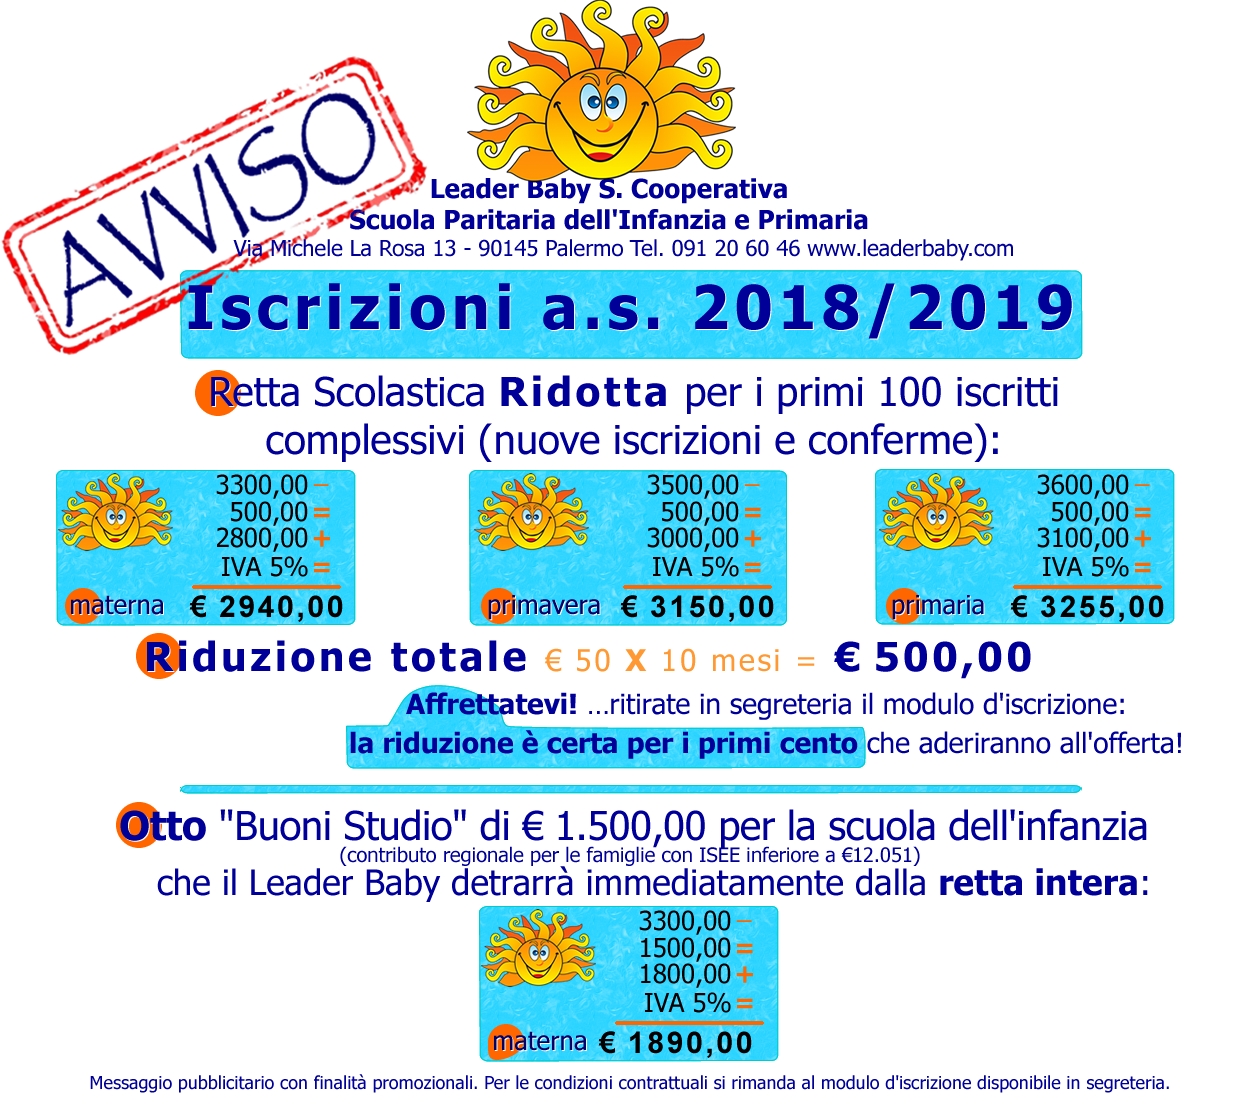 Scuola primaria e dell'infanzia iscrizioni 2018-19 borse di studio da 500 e 1500 euro disponibili